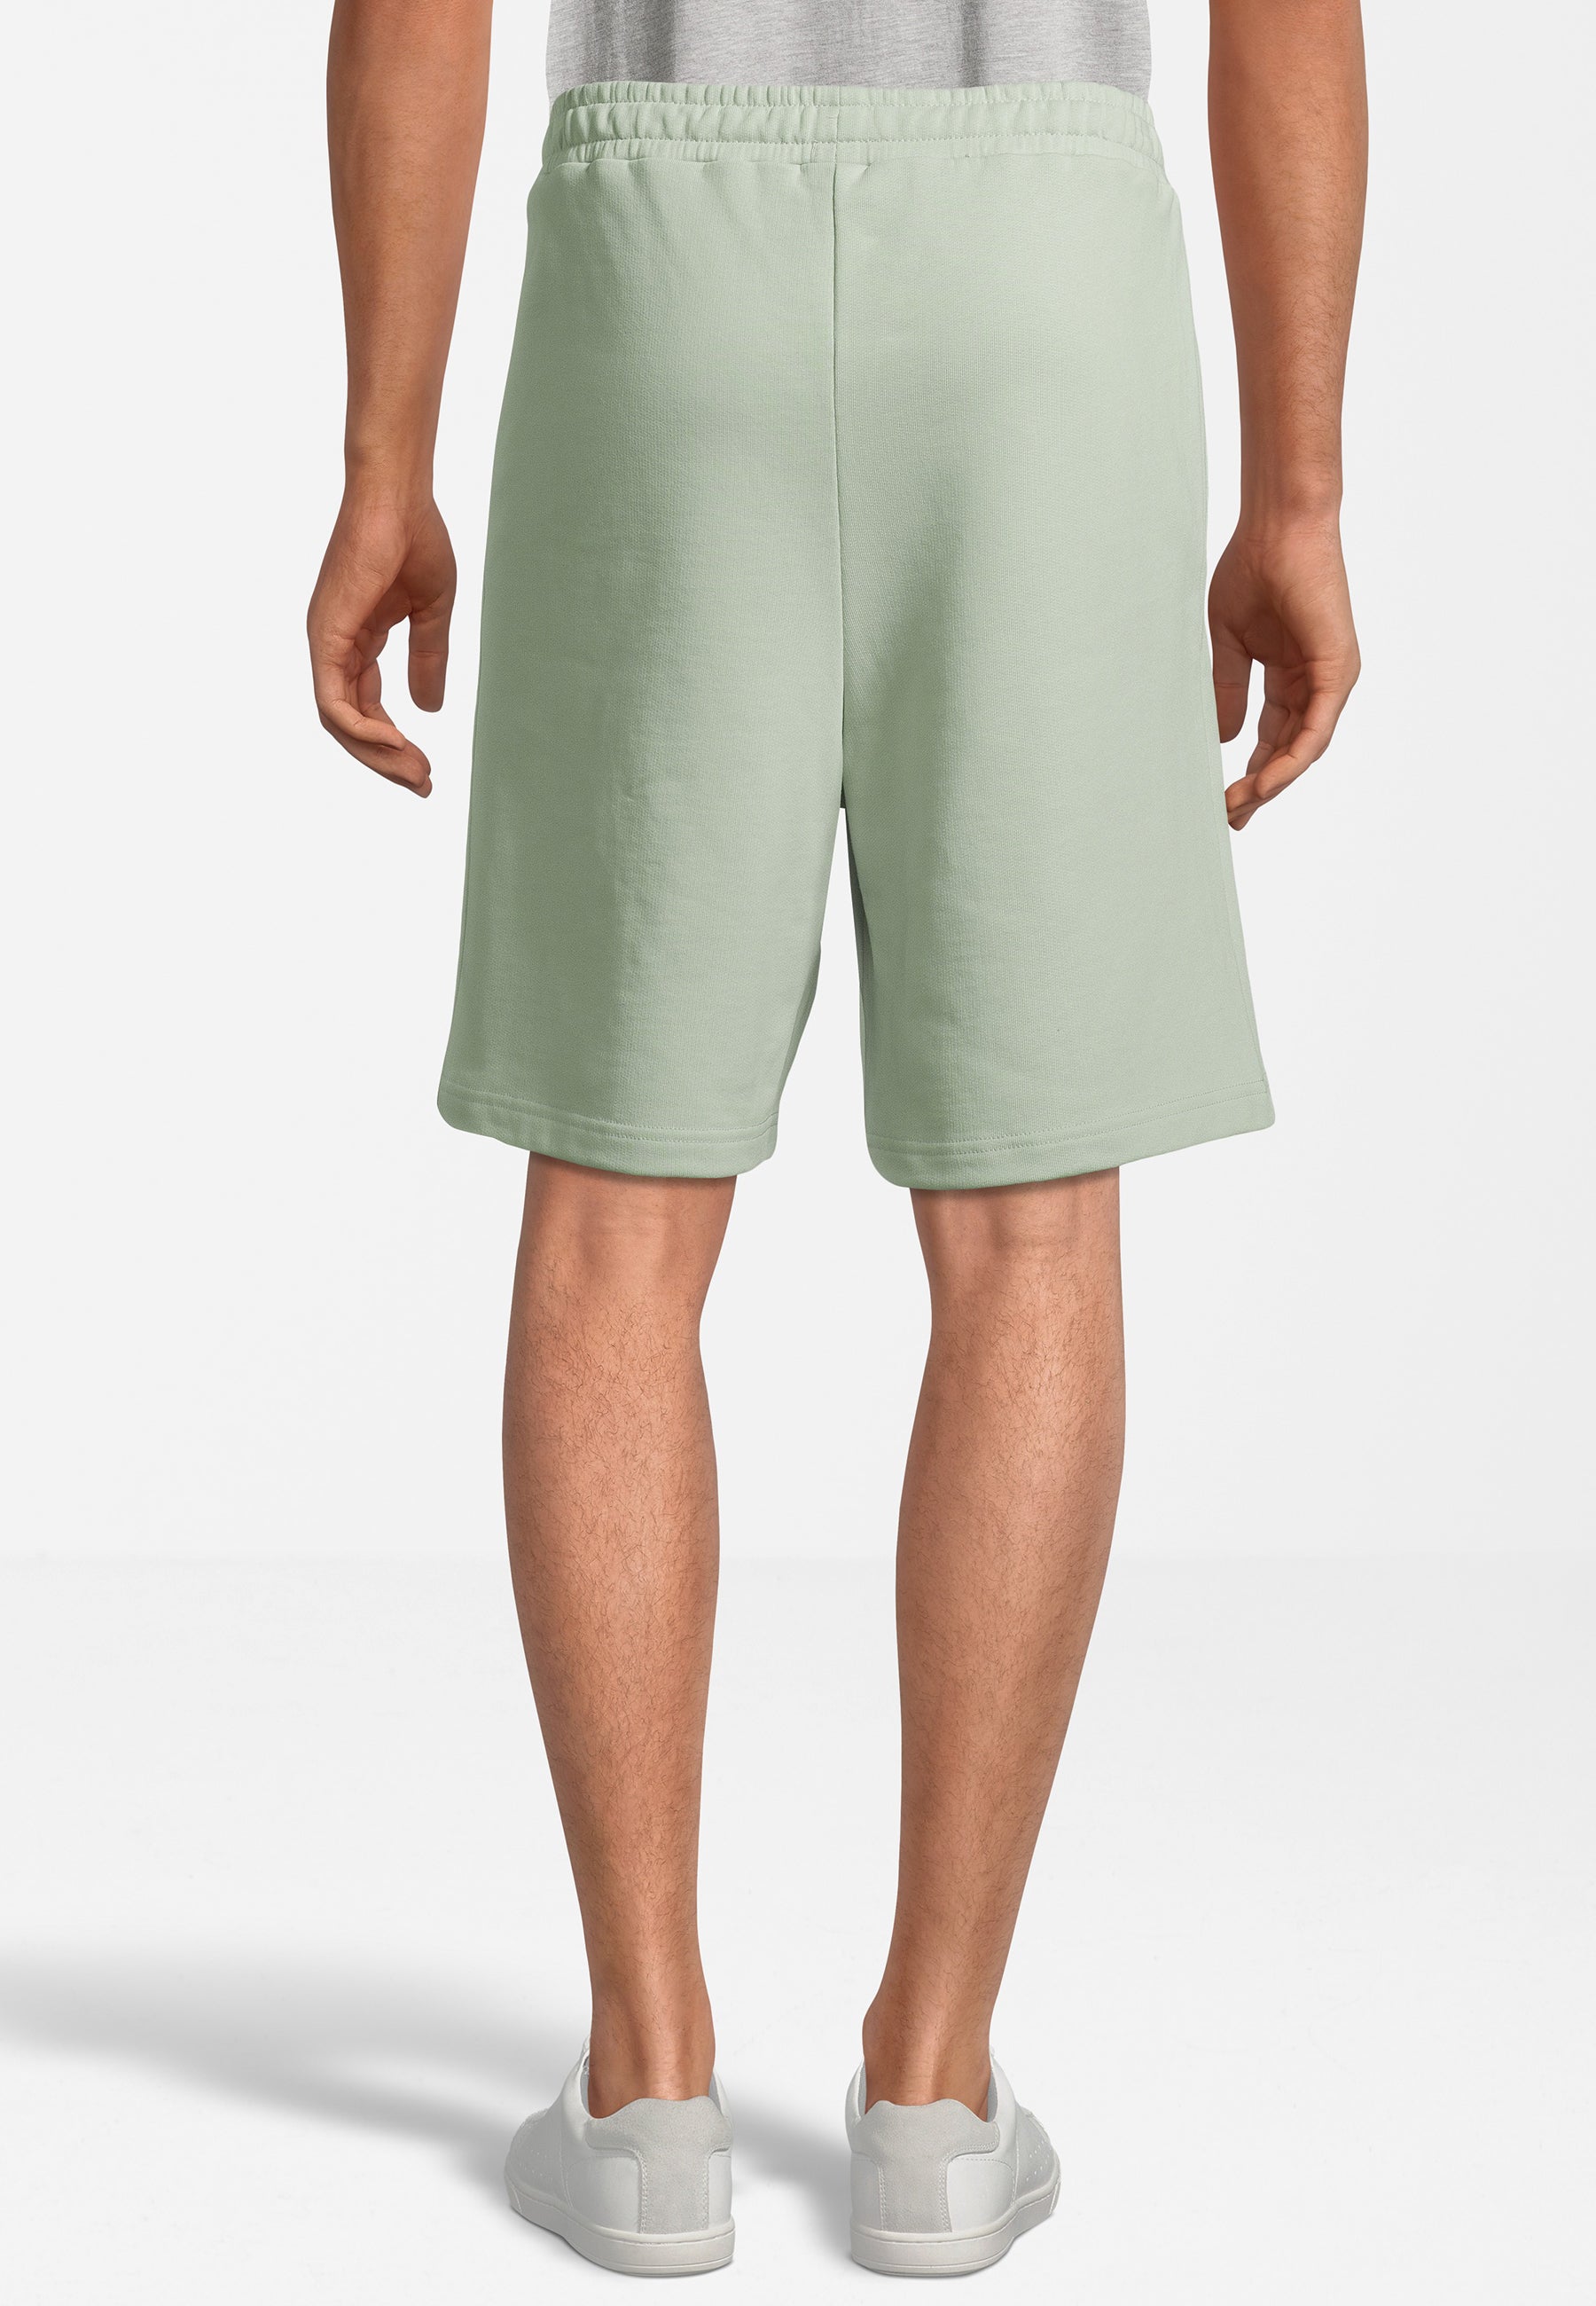 Baiern Oversized Sweat Shorts in Silt Green Shorts Fila   